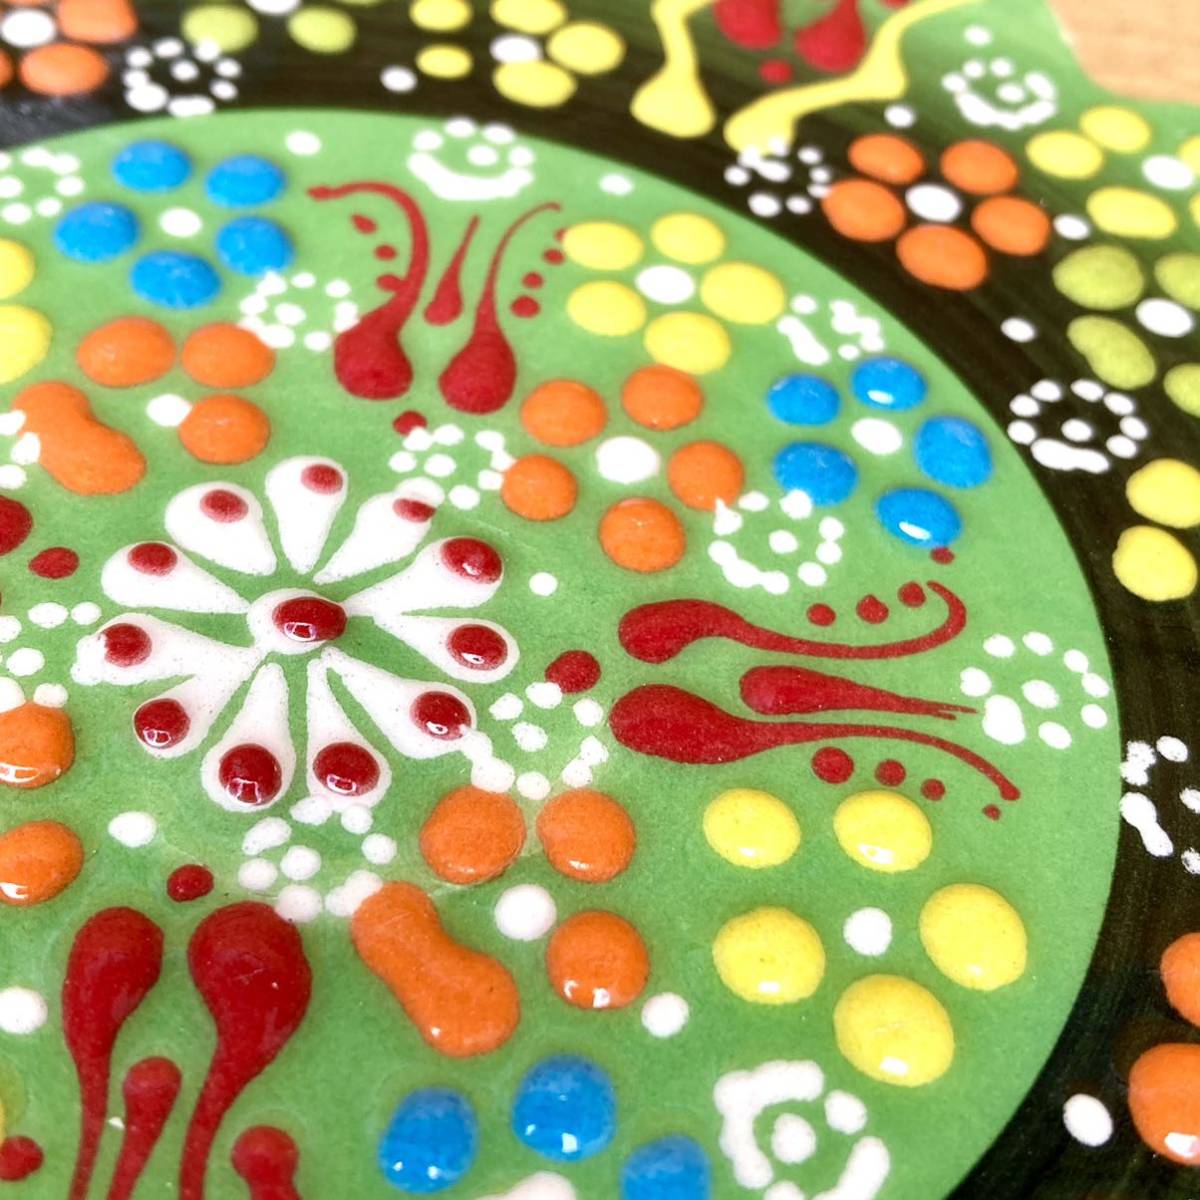 18cm* новый товар * Турция керамика коврик для посуды орнамент плитка * светло-зеленый ....* ручная работа kyu жесткий ya керамика 168